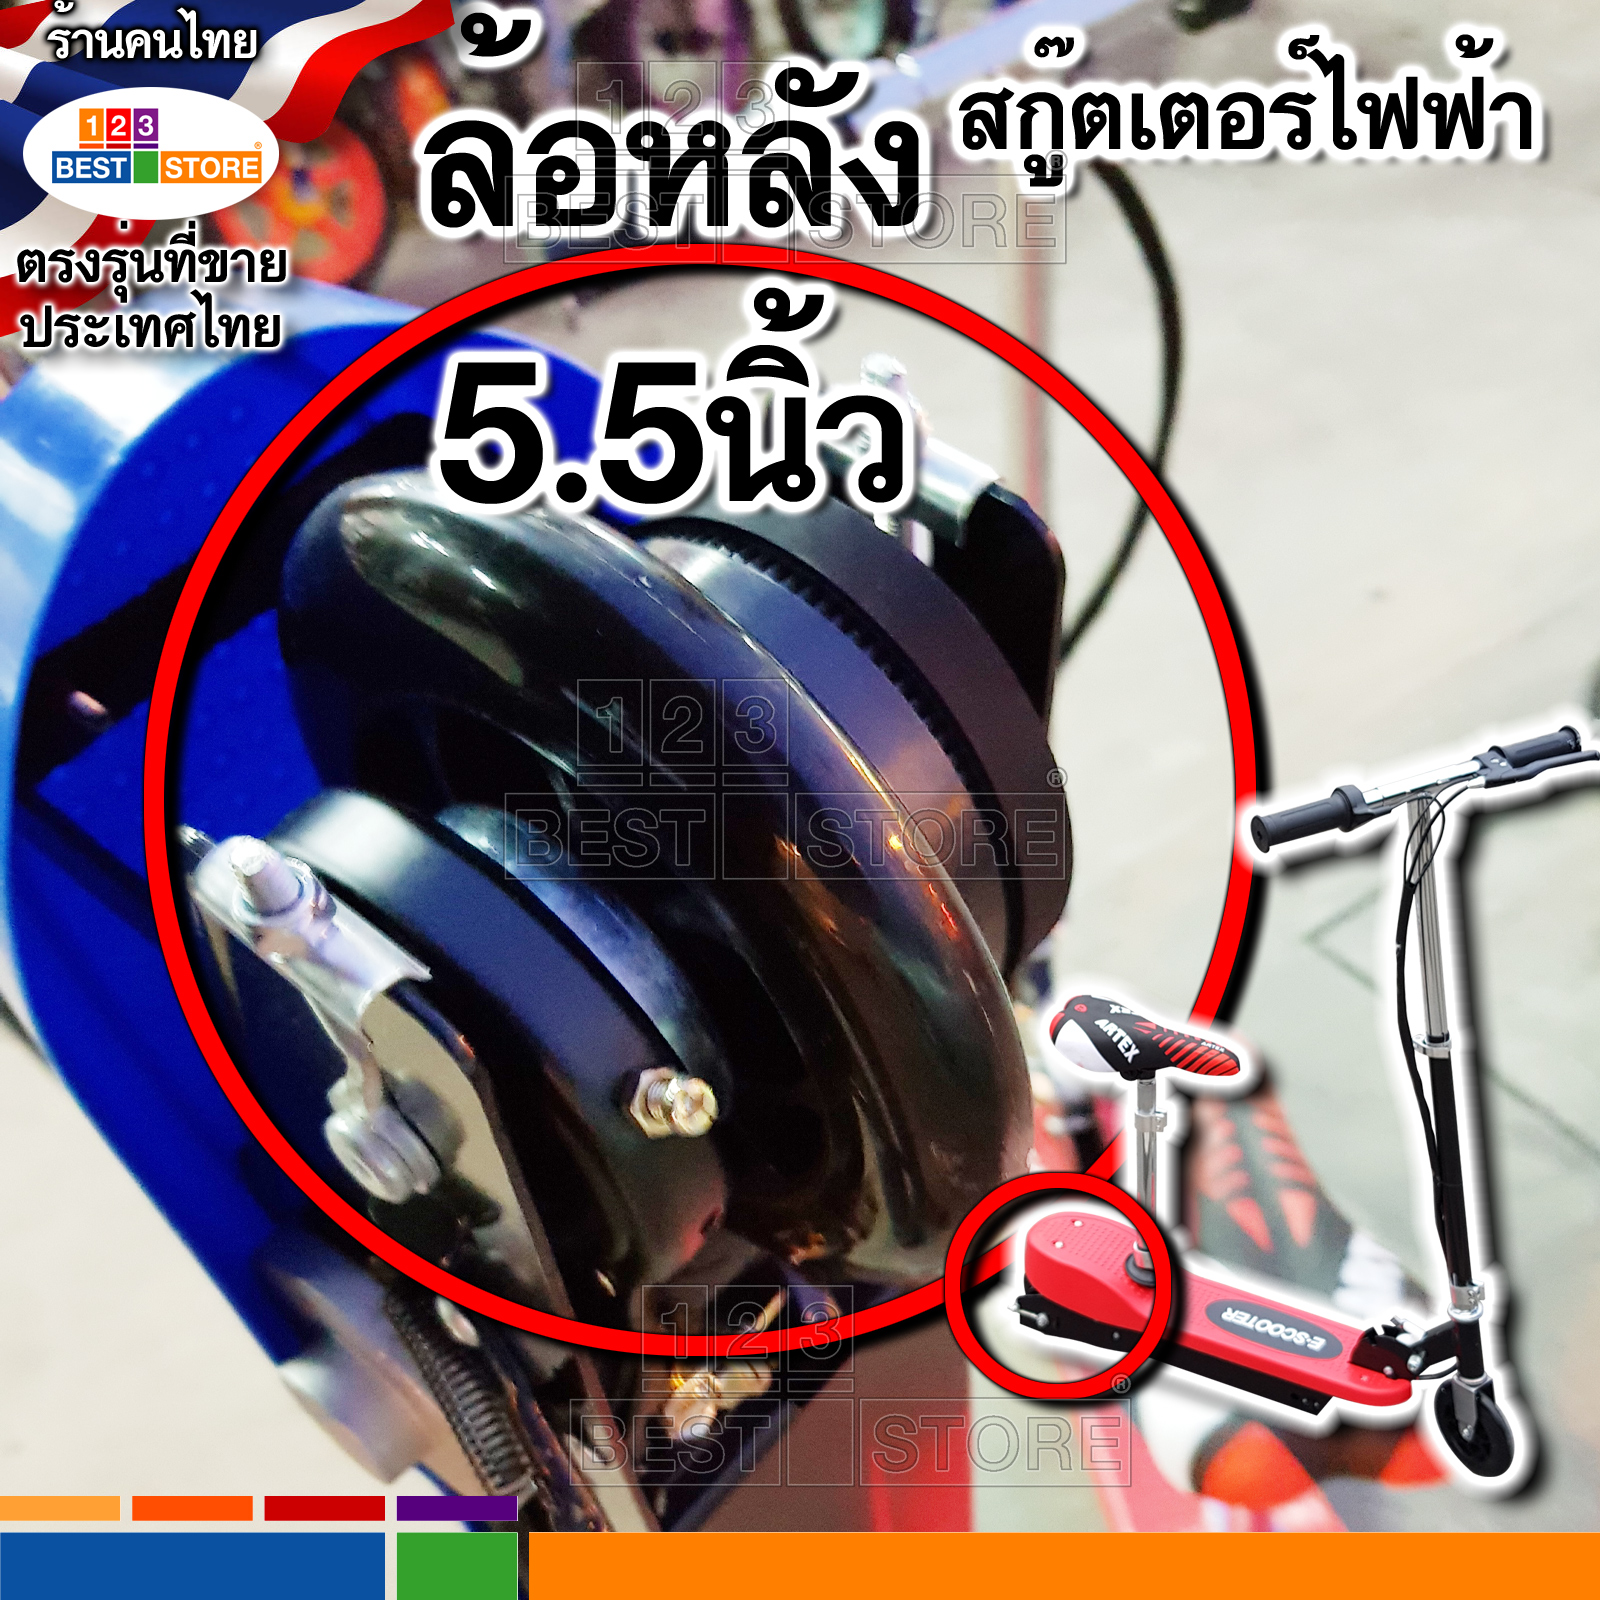 รายละเอียดเพิ่มเติมเกี่ยวกับ อะไหล่ตรงรุ่นของไทย สกู๊ตเตอร์ไฟฟ้า มอเตอร์24V สายชาร์จไฟ24V แบตเตอรี่12V4.5Ah กล่องควบคุม ล้อหน้า ล้อหลัง คันเร่ง เบรคมือ สายพาน384-3M-12 390-3M-12